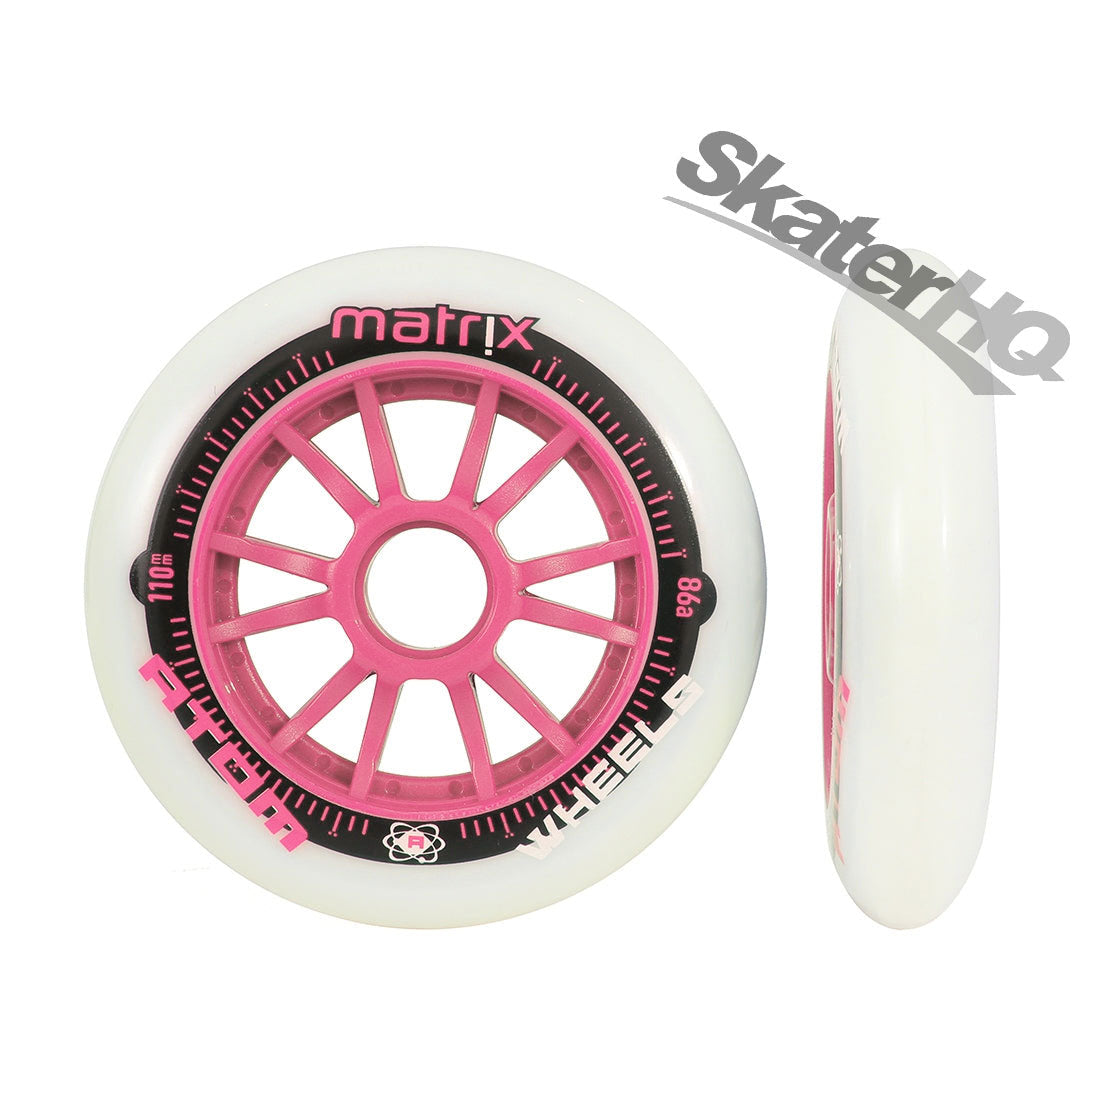 Atom Matrix 110mm 86a 6pk - White/Pink Inline Rec Wheels